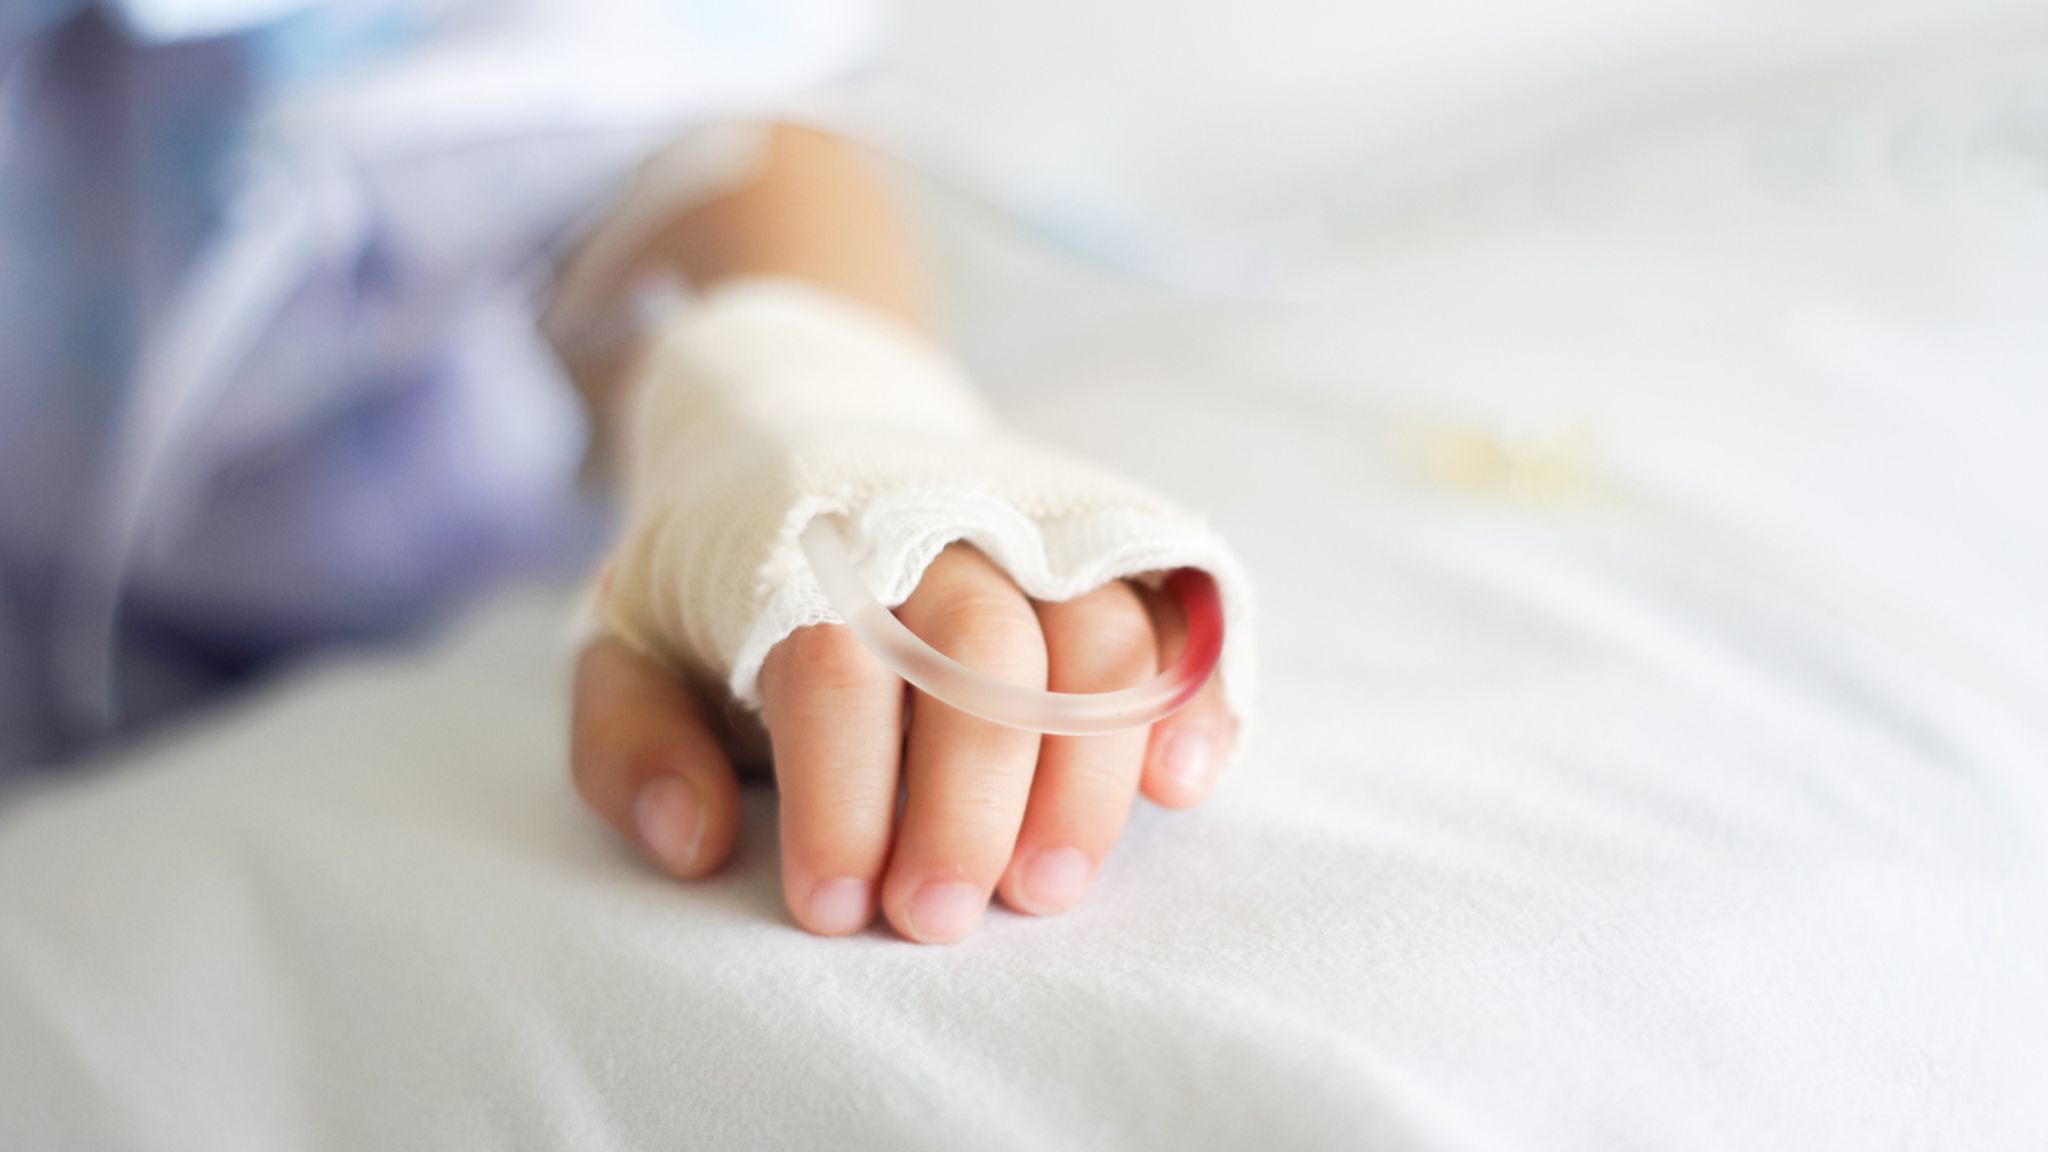 Un alt caz revoltător într-un spital din România! Medicii din Alba Iulia au trimis acasă un copil cu mâna ruptă. Doctorii i-au recomandat un unguent